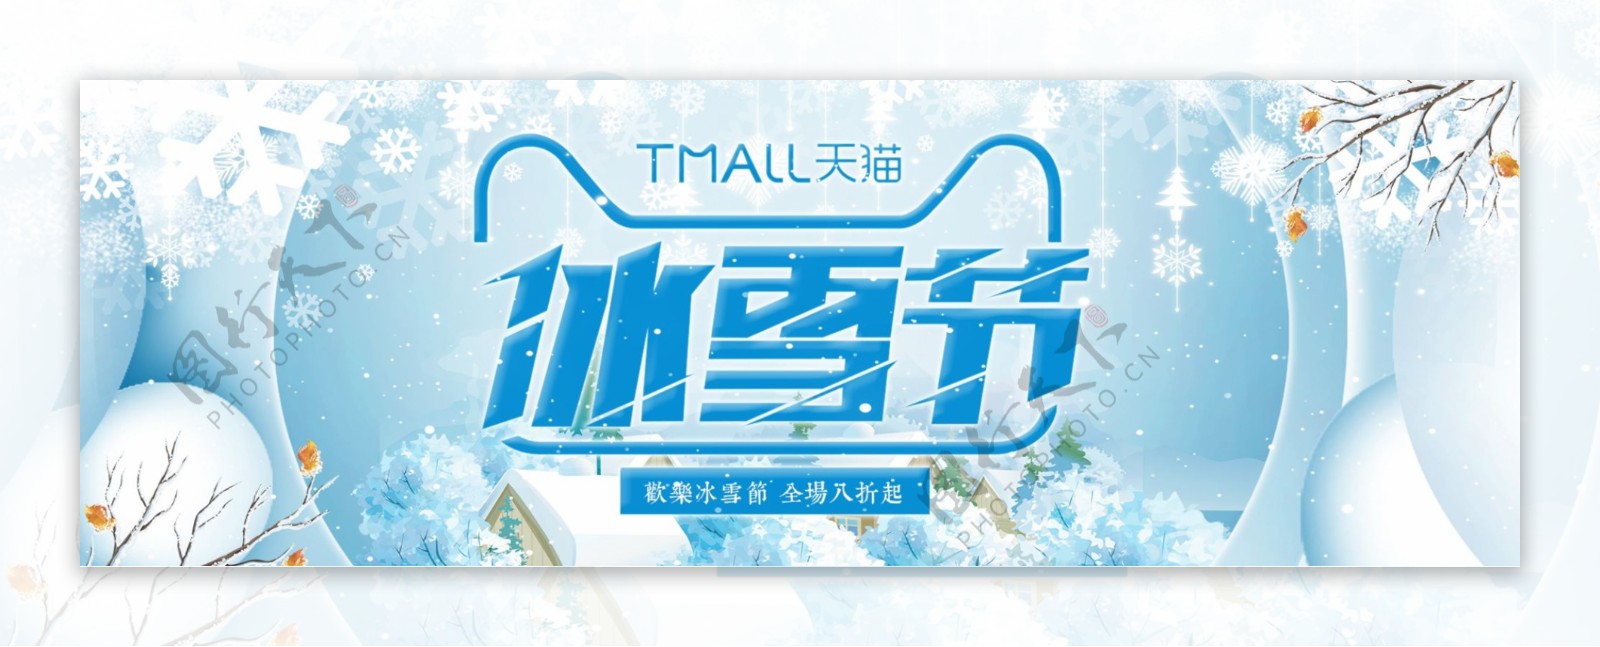 蓝色清新雪花冬季冰雪节促销海报